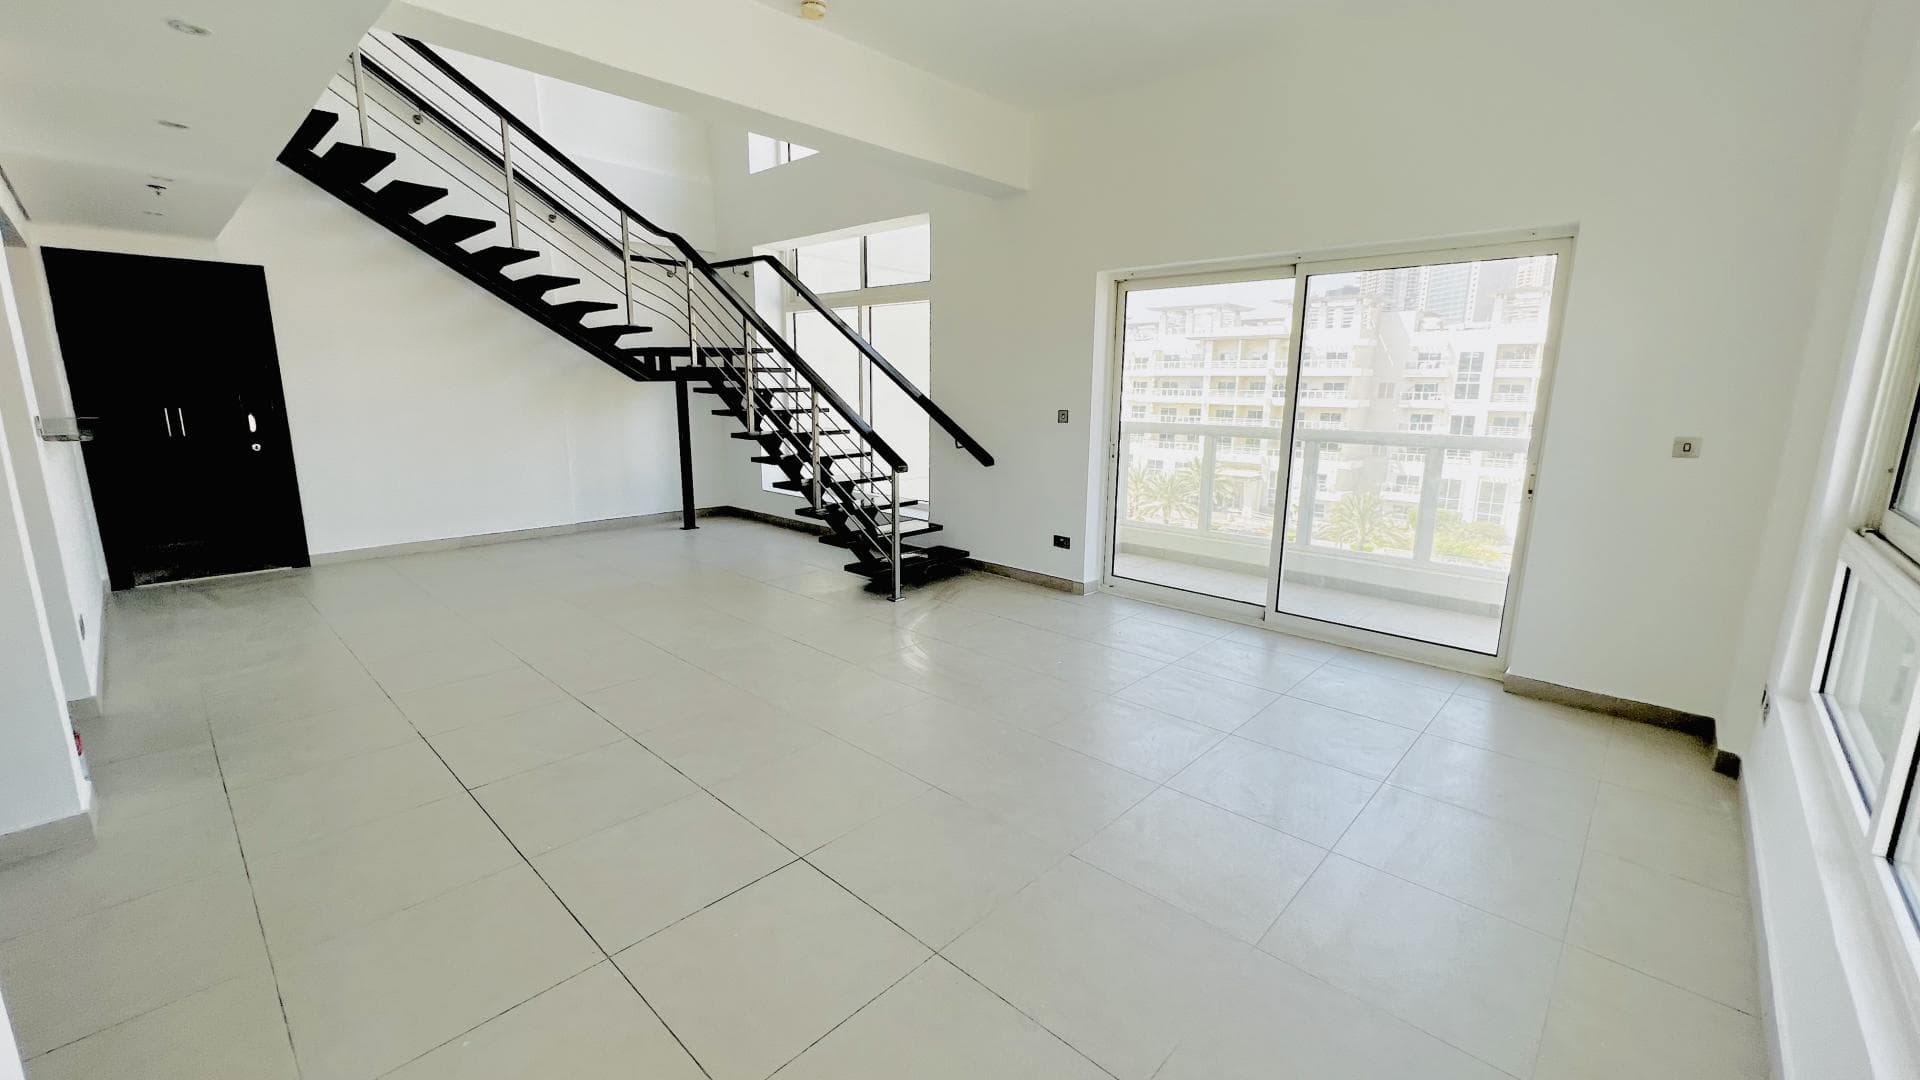 3 Bedroom Apartment For Rent Al Fahad Tower 2 Lp38566 Cff2c5c9ef08580.jpg